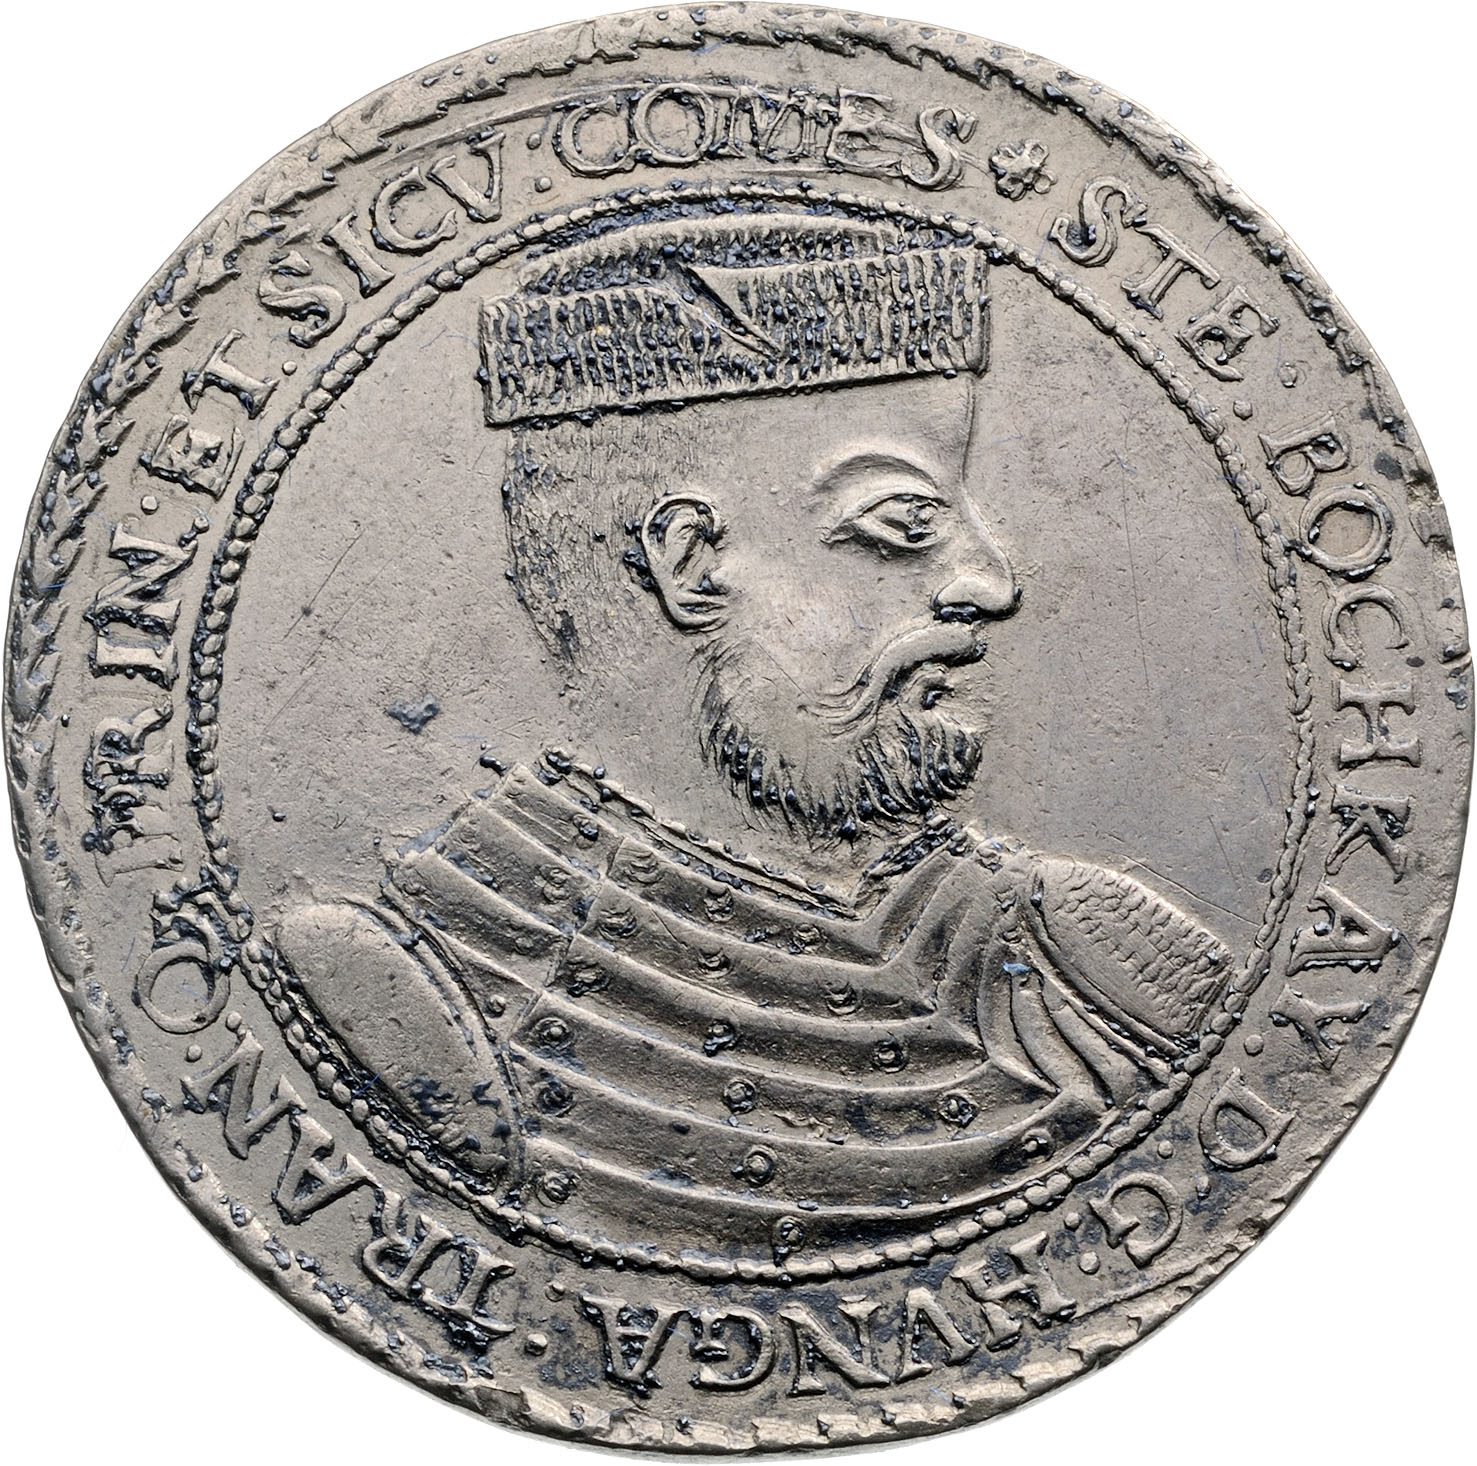 Erdélyben vert ezüsttallérok, érmegyűjtemény, XIV–XVII. század, 1,1 milliárd Ft